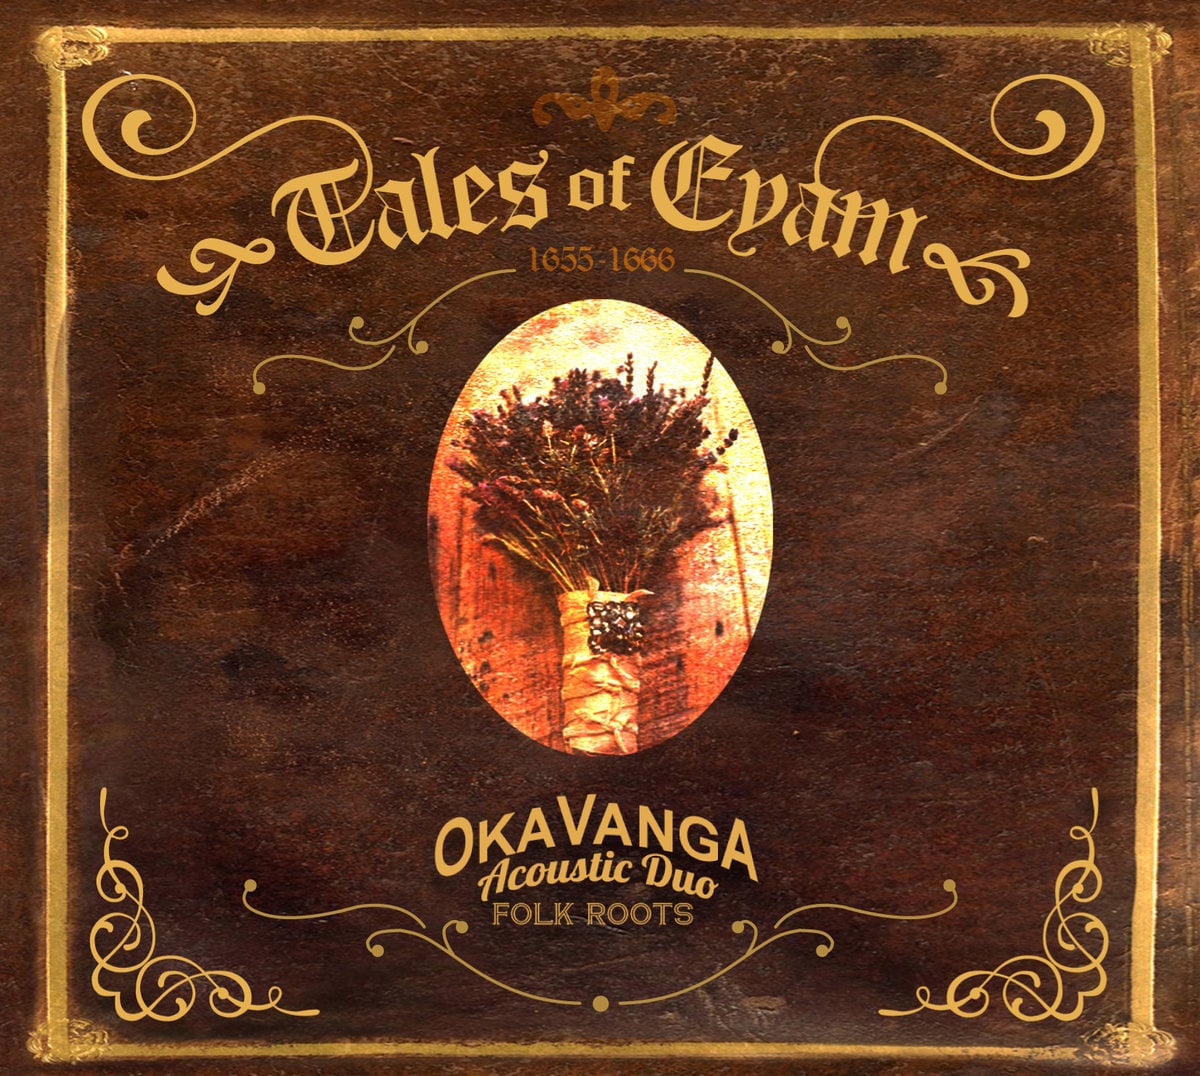 Tales of Eyam EP - Oka Vanga